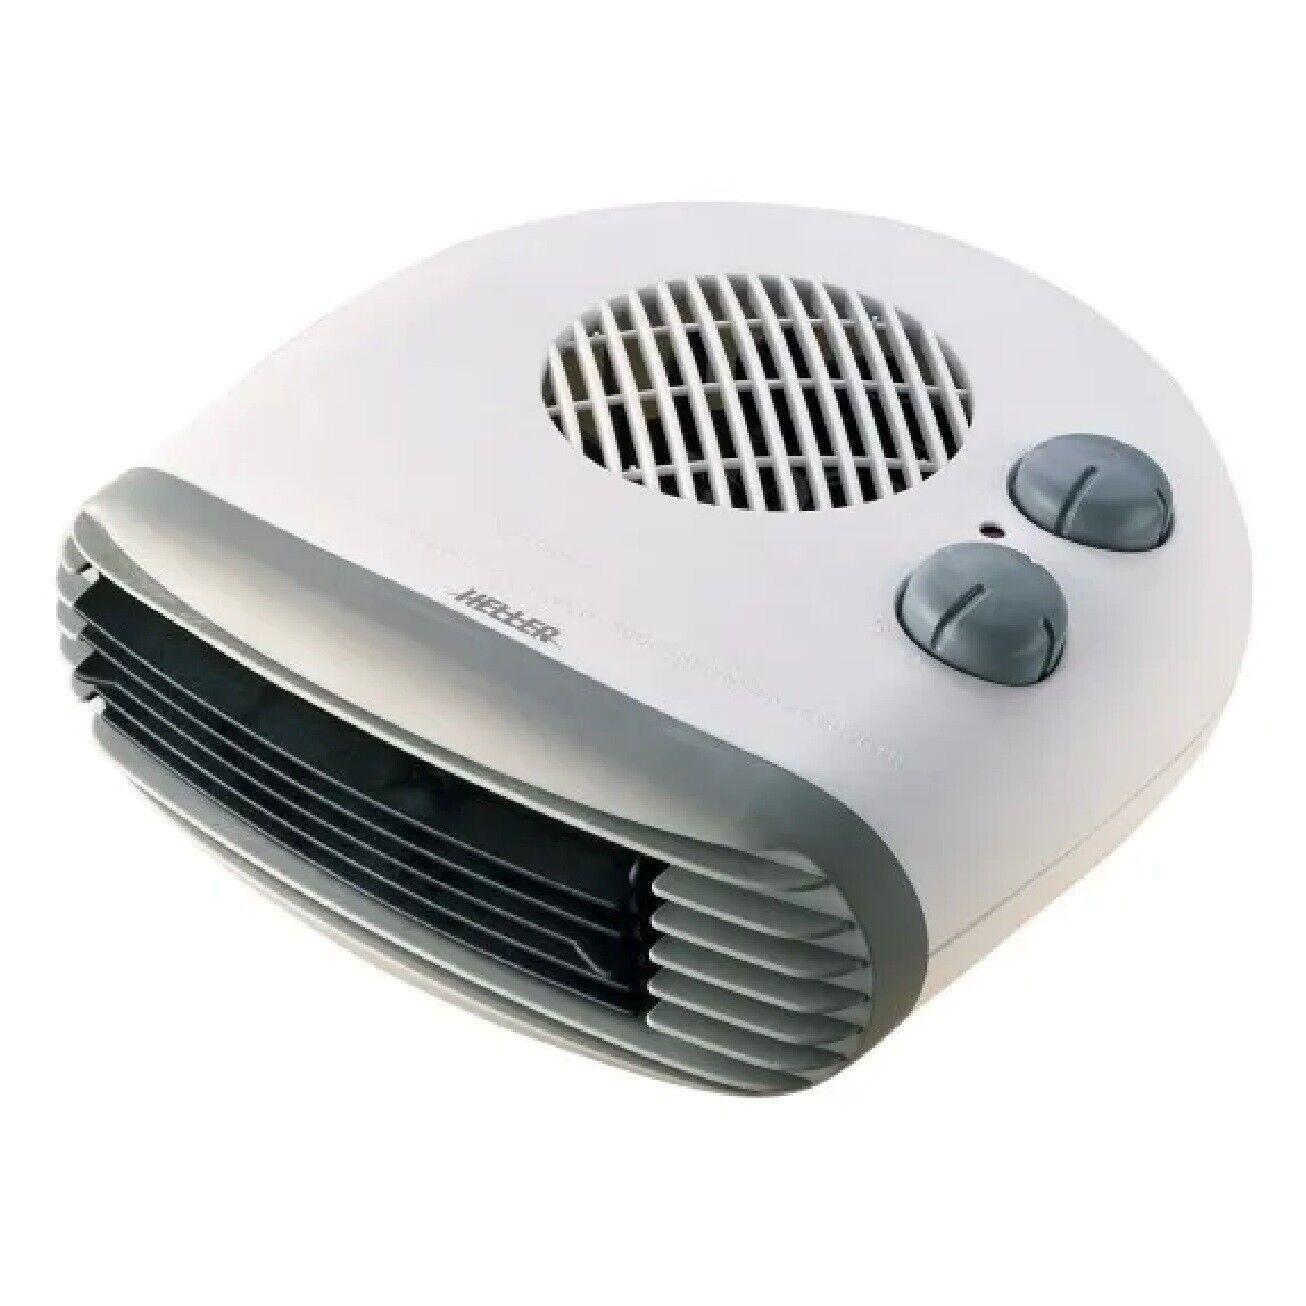 Heller Low Profile Fan Heater 2000W Floor Table Desk Adjustable Thermostat